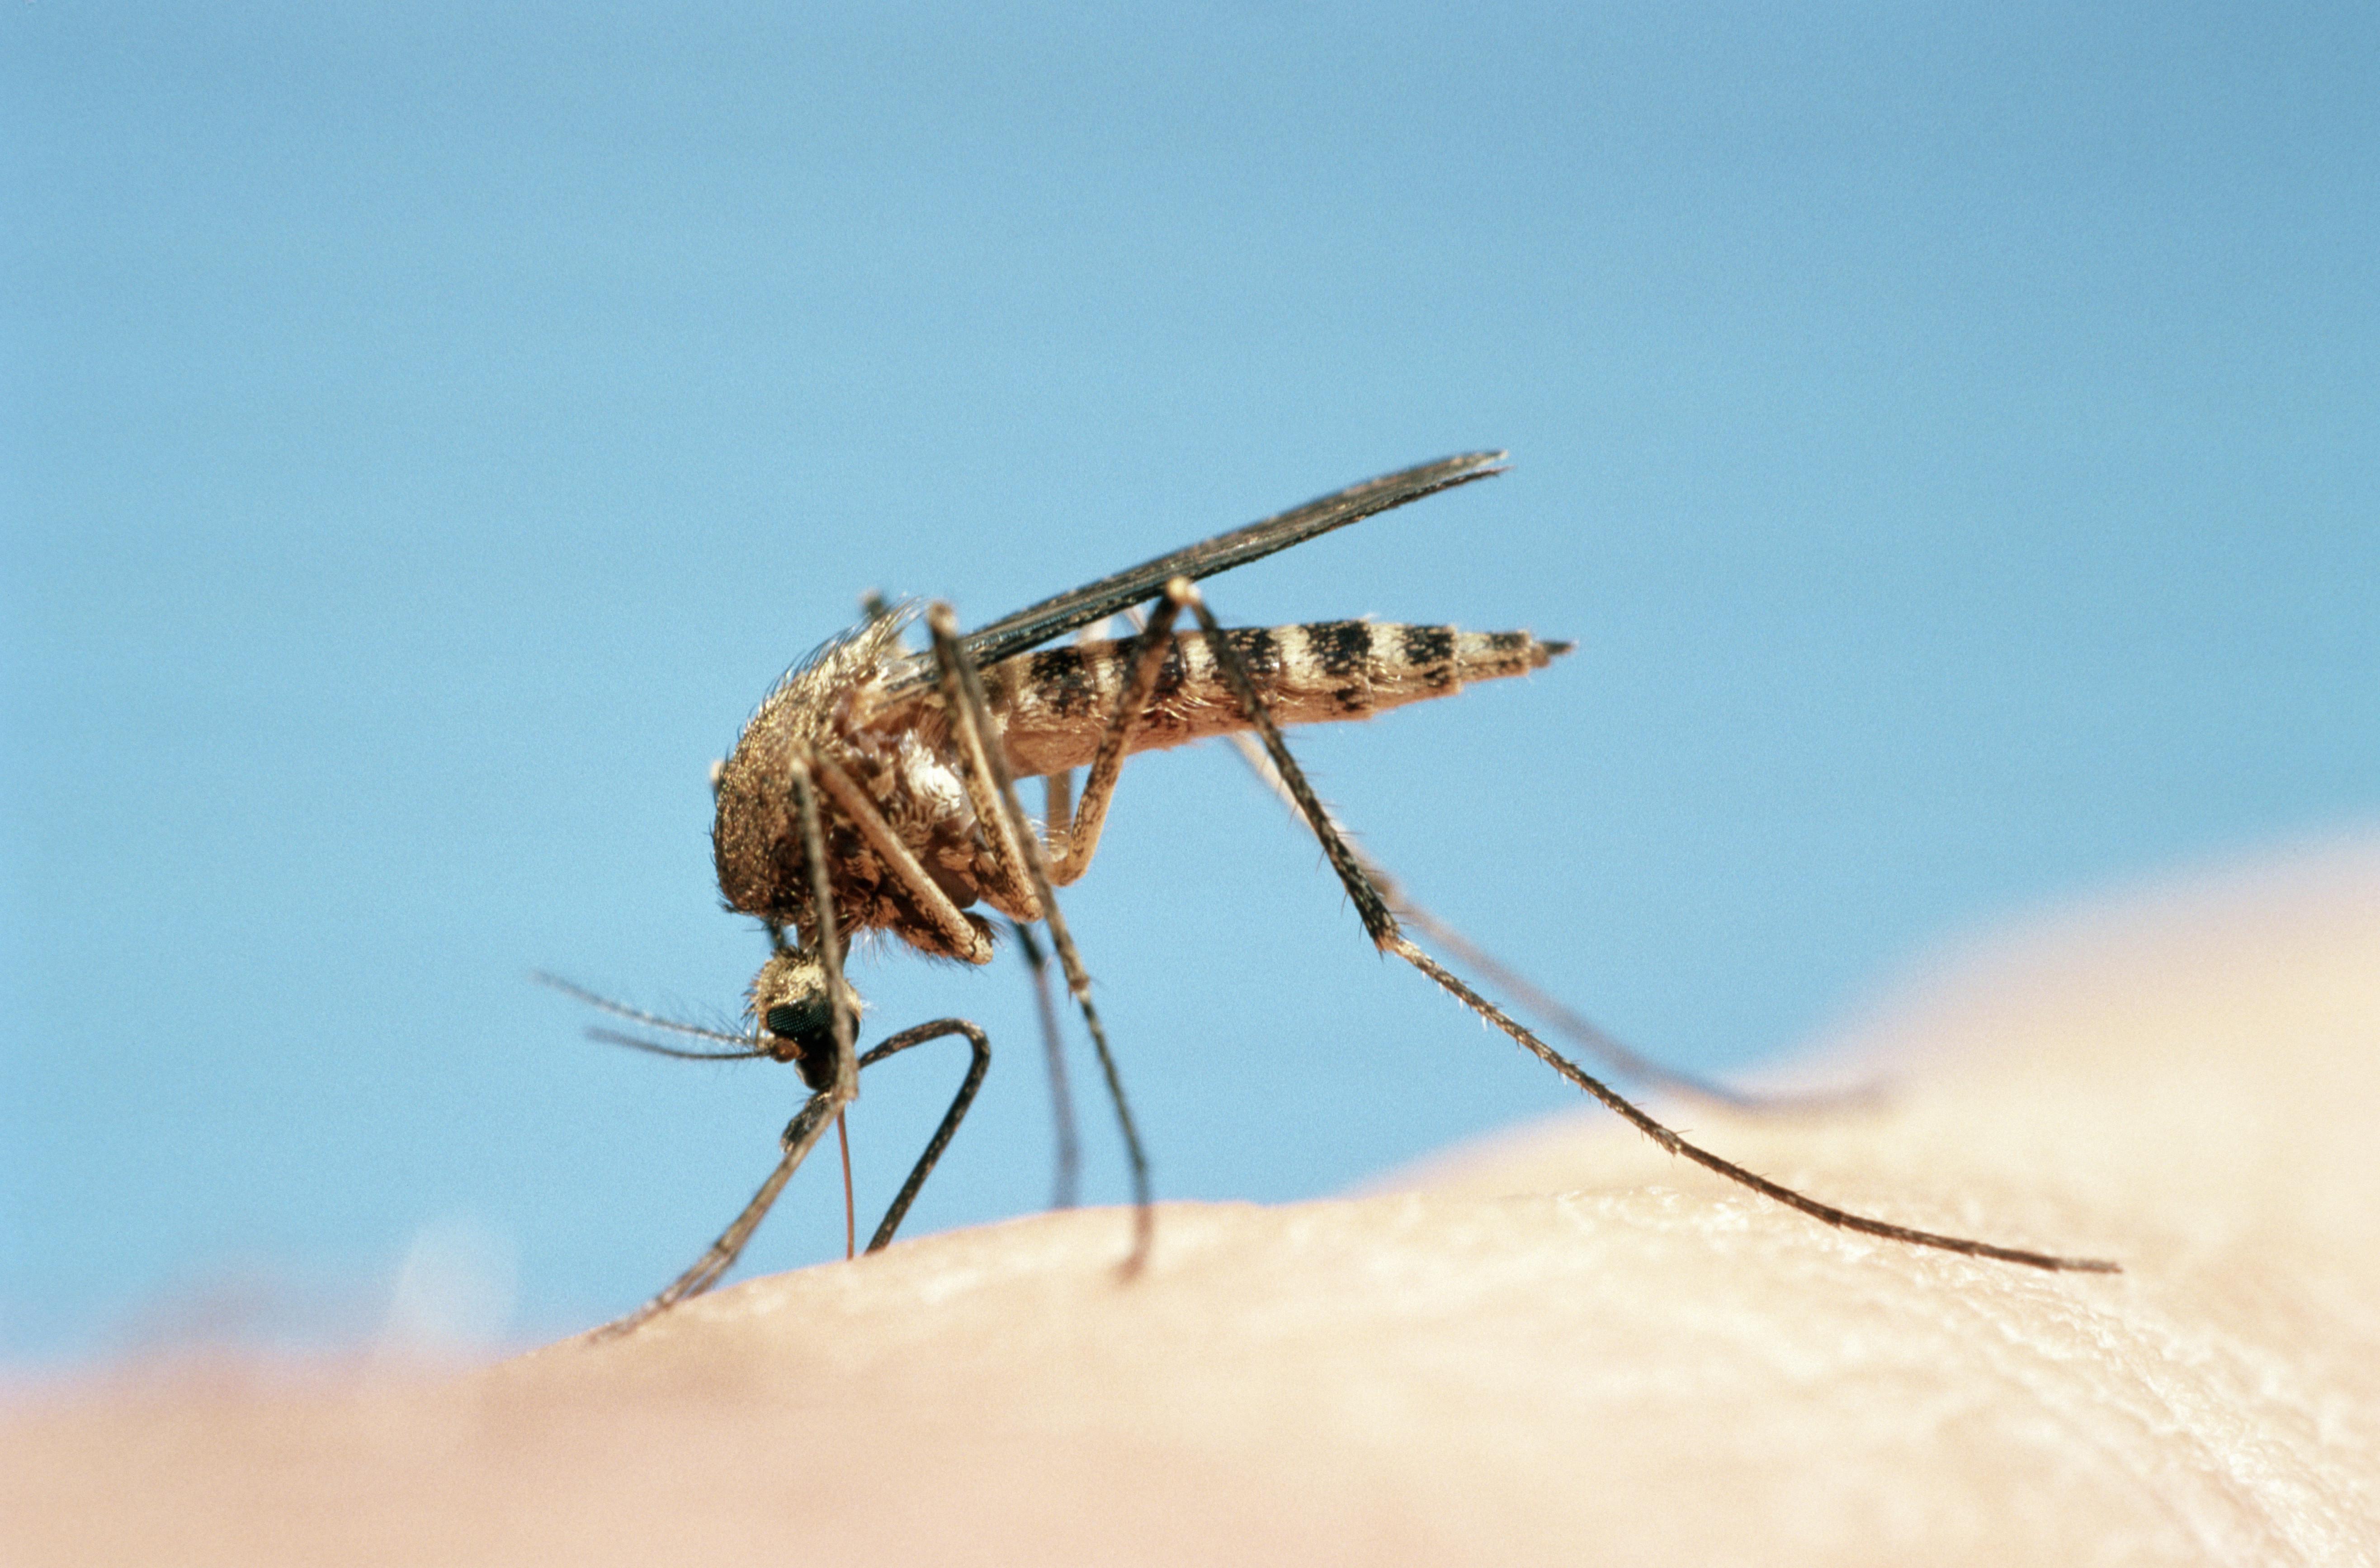 Mosquito (Culicidae sp) feeding, close-up